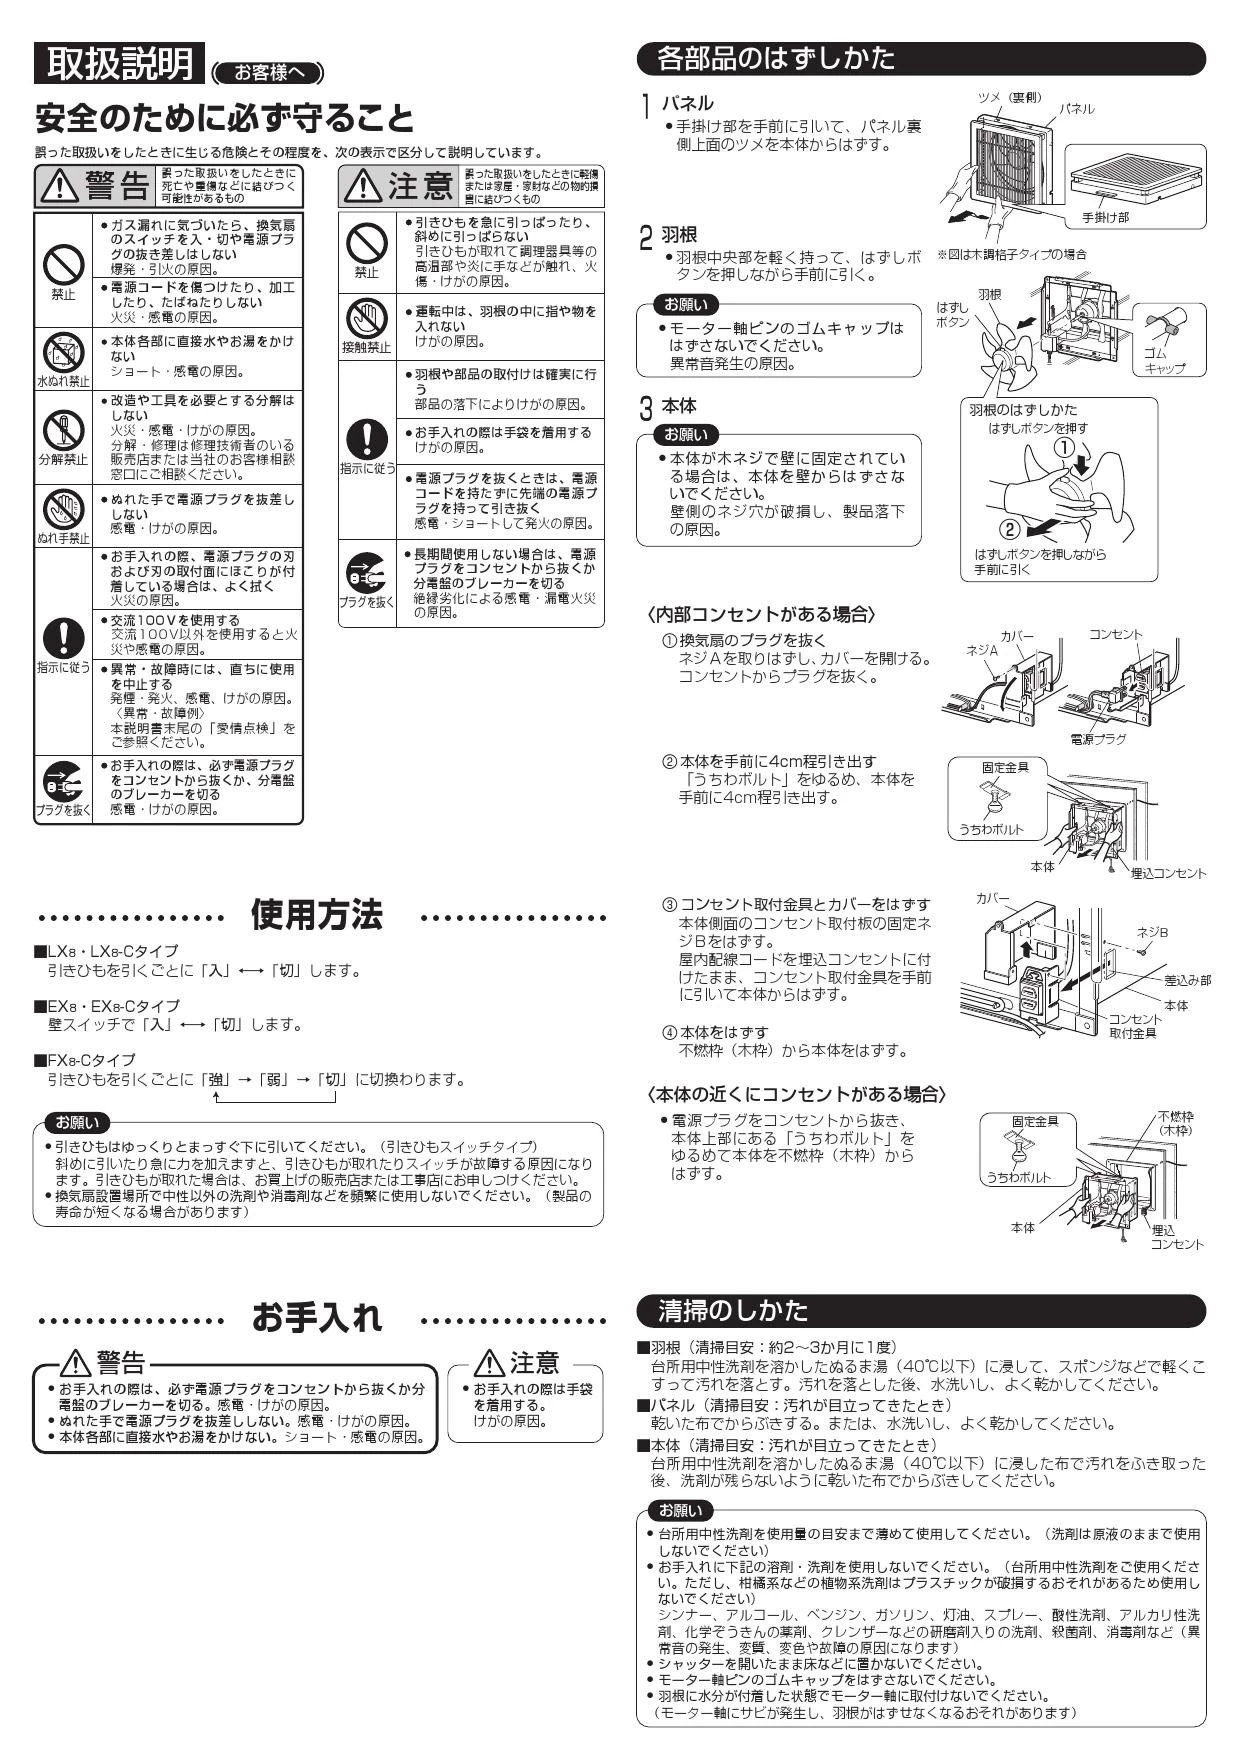 三菱電機 EX-25EX8-C取扱説明書 施工説明書 納入仕様図 | 通販 プロ